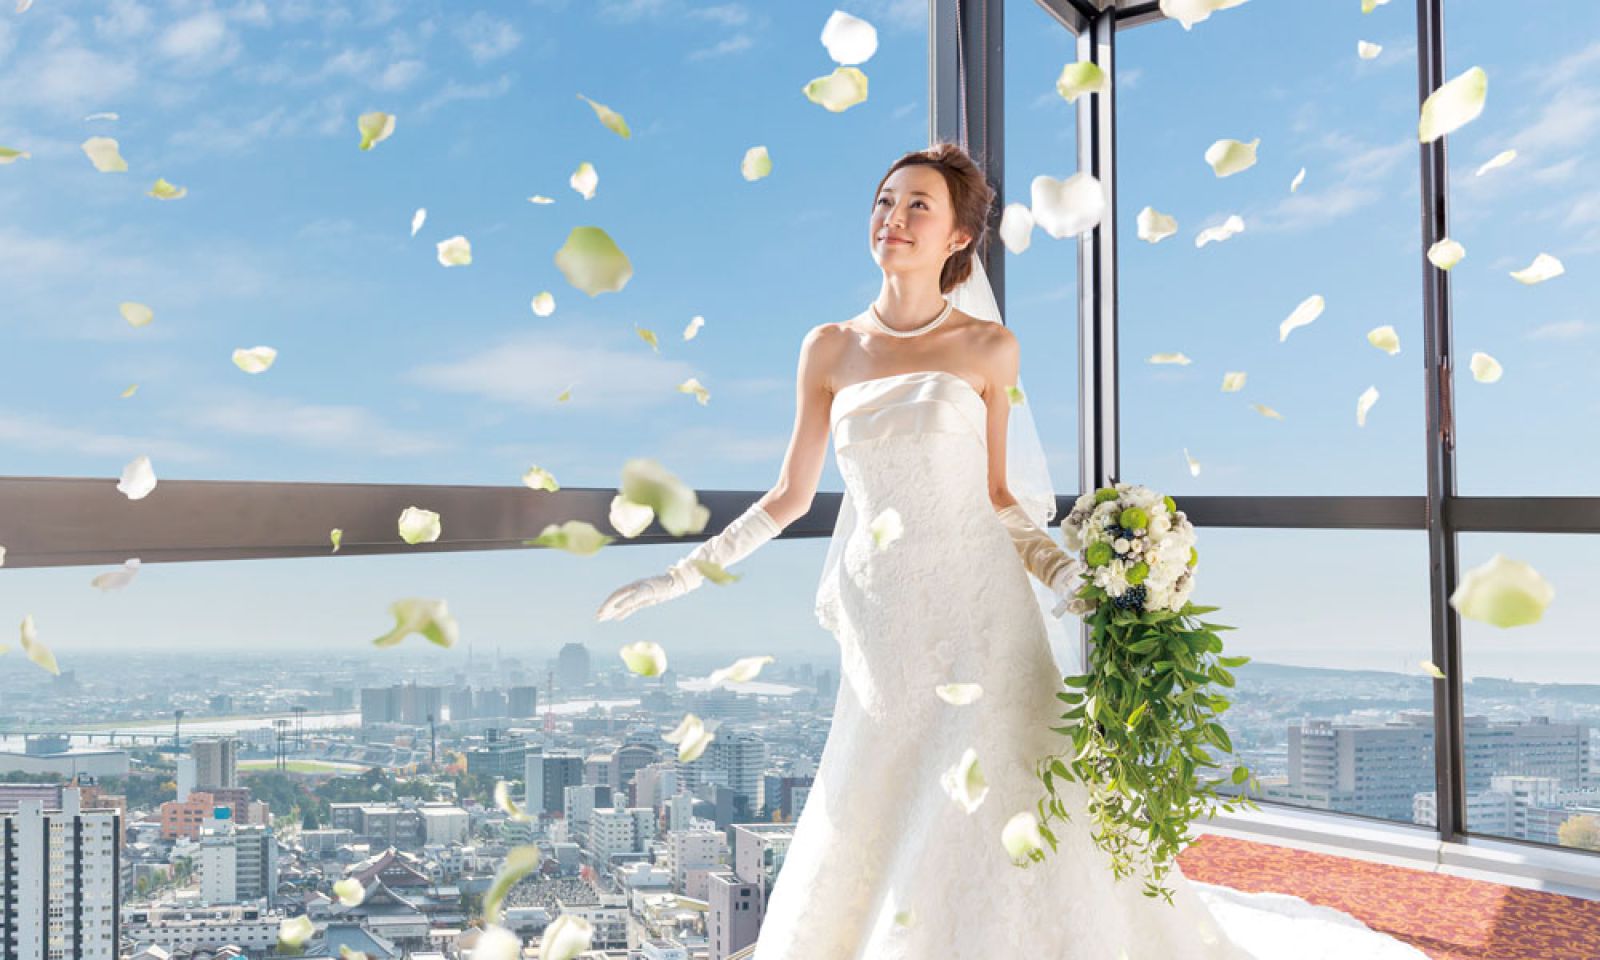 新潟市街を見渡す「天空の挙式」は忘れられない誓い!
「小さな結婚式」、会費制婚、少人数婚などプランも多彩